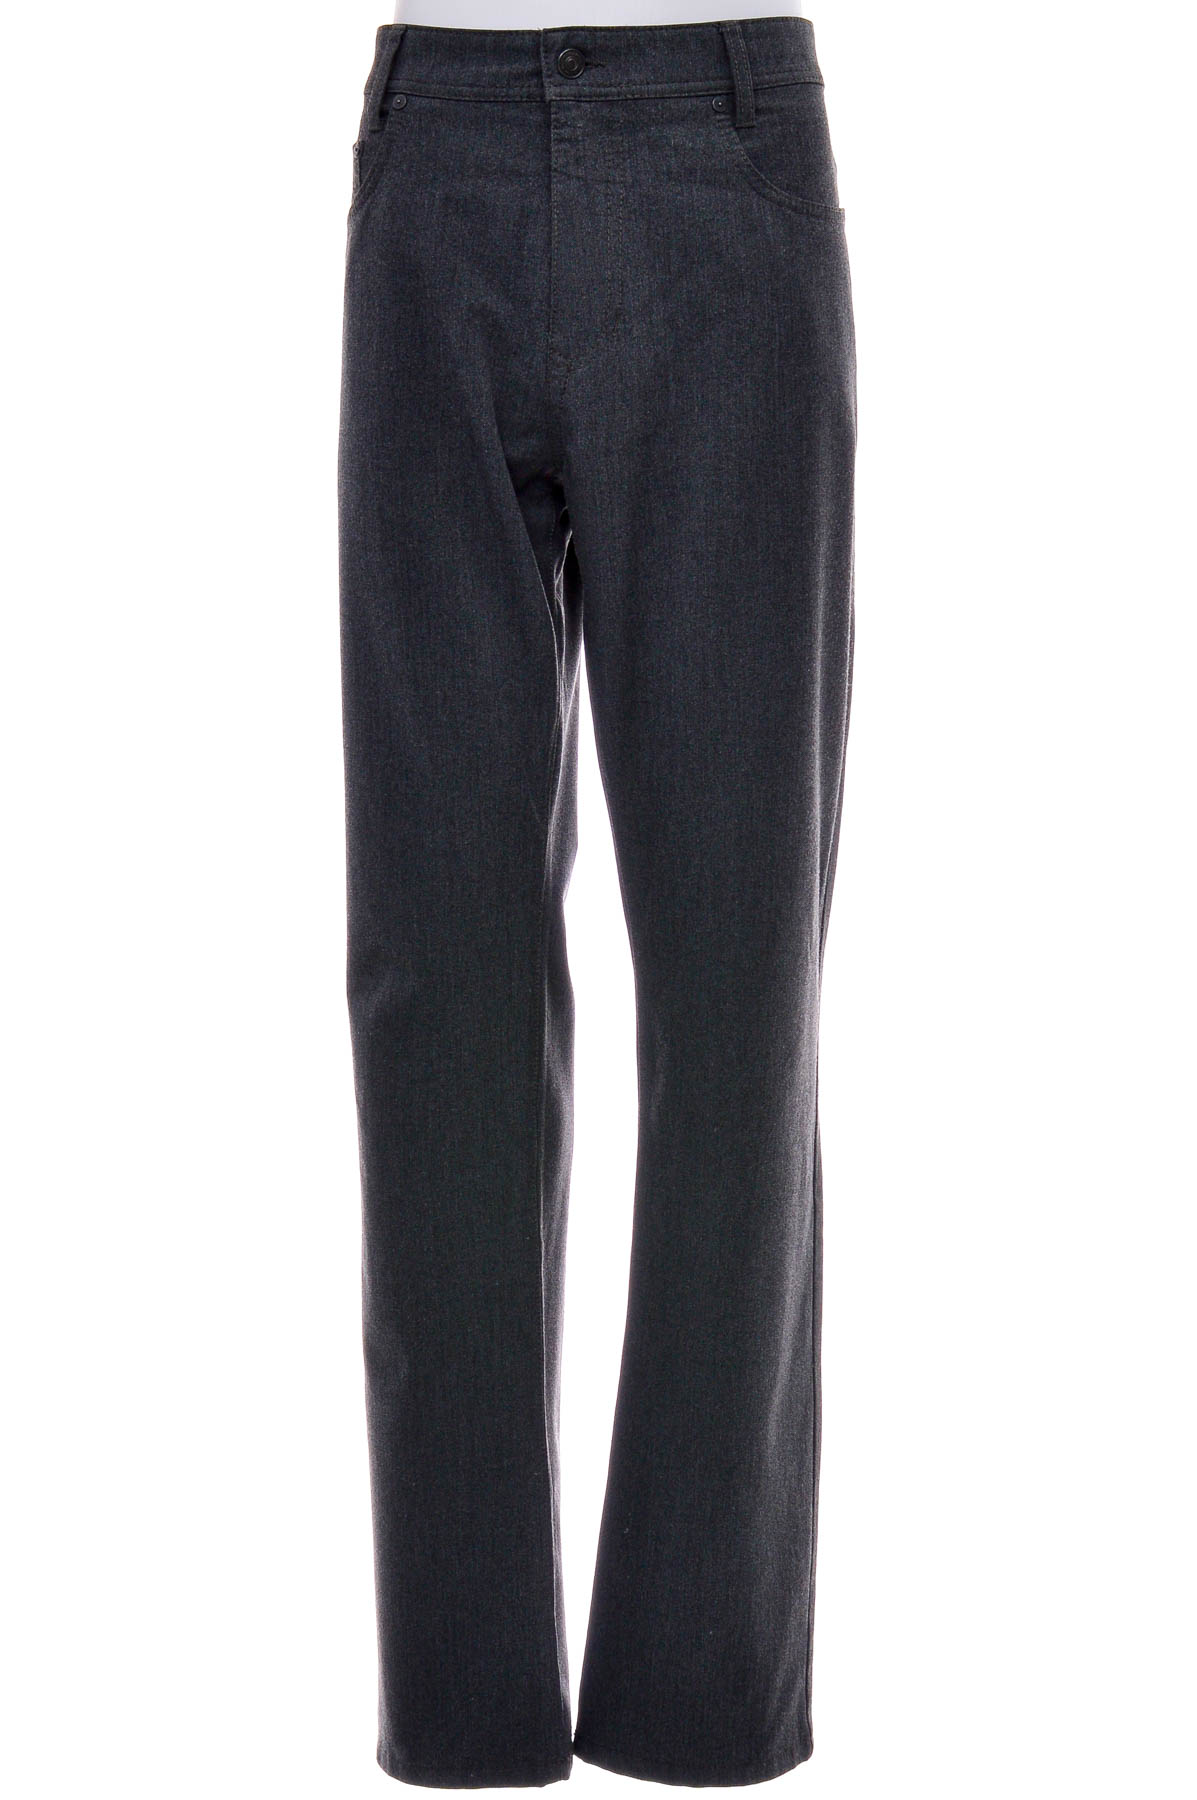 Pantalon pentru bărbați - MAC Jeans - 0